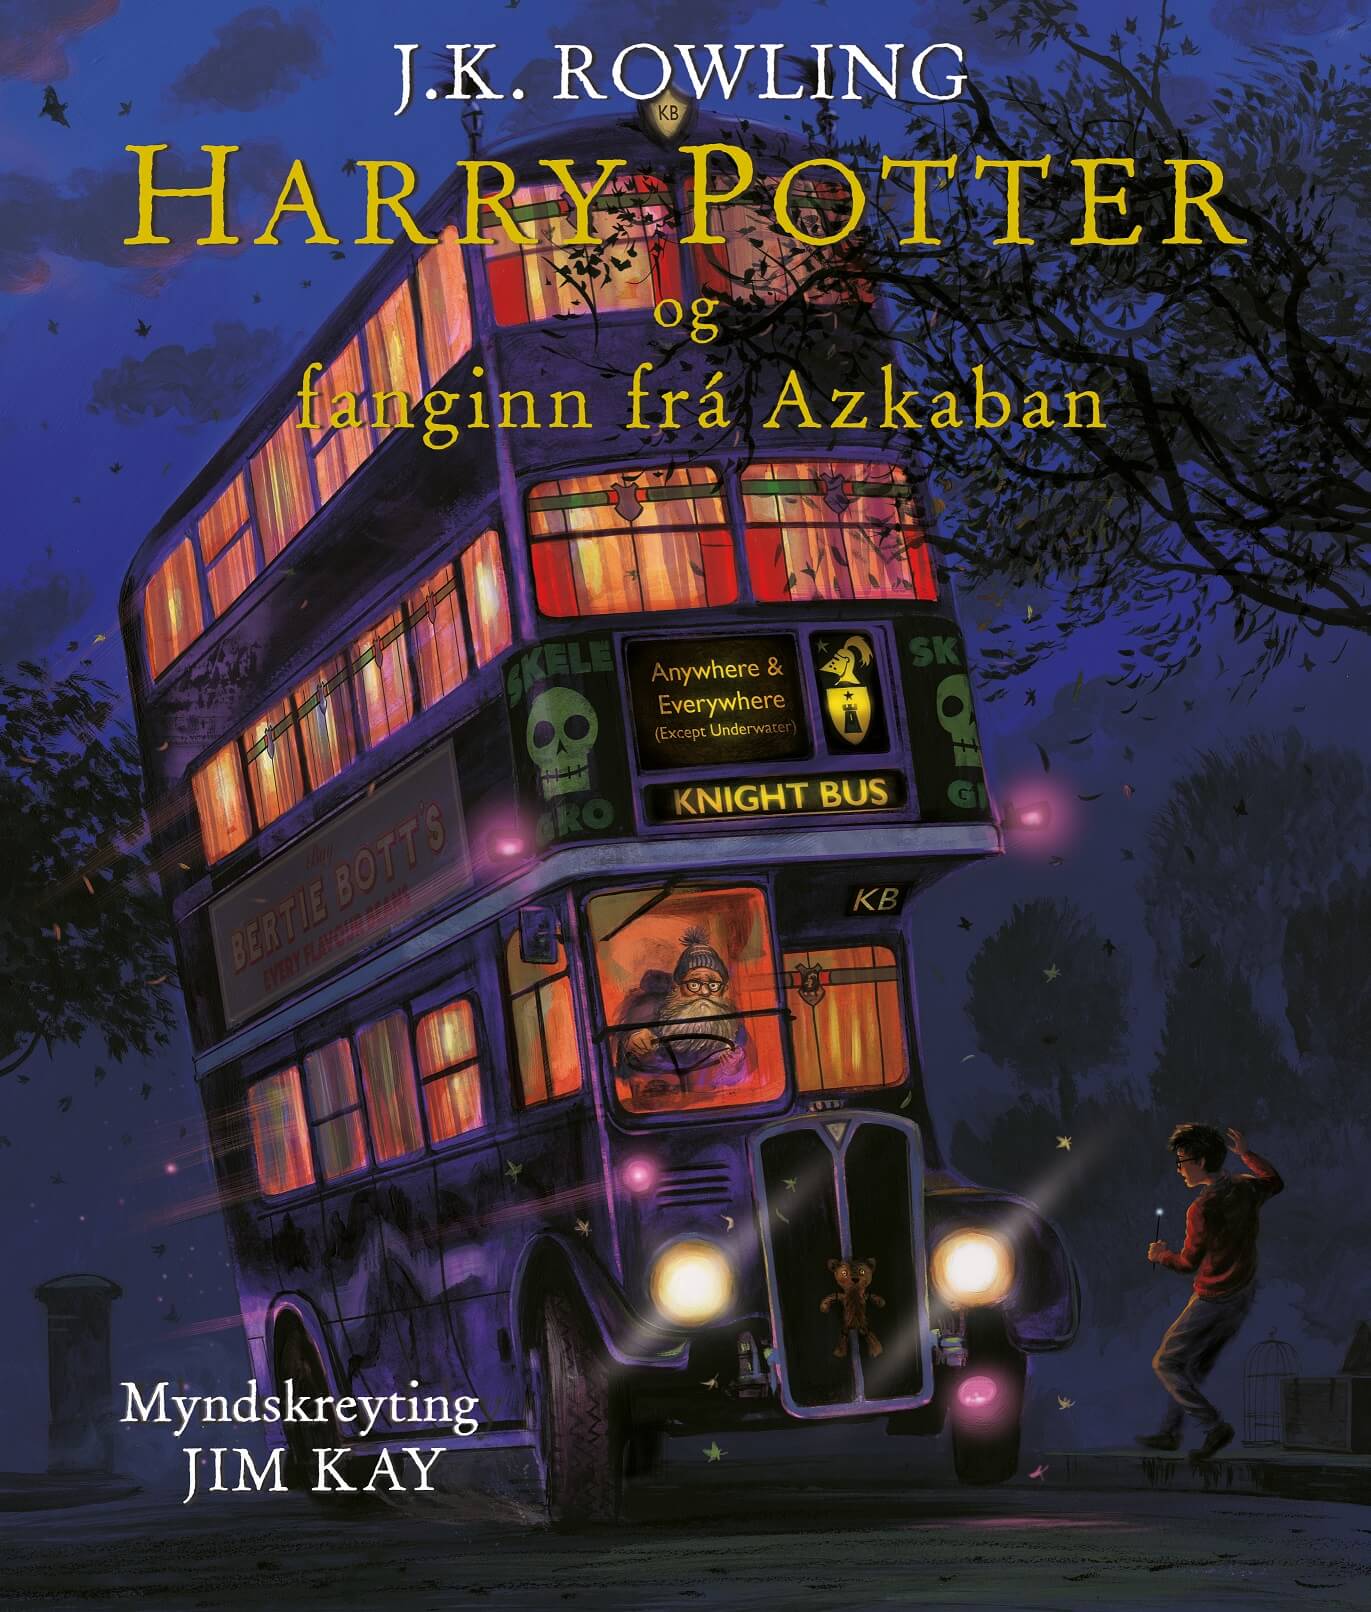 Harry Potter og fanginn frá Azkaban - myndskreytt